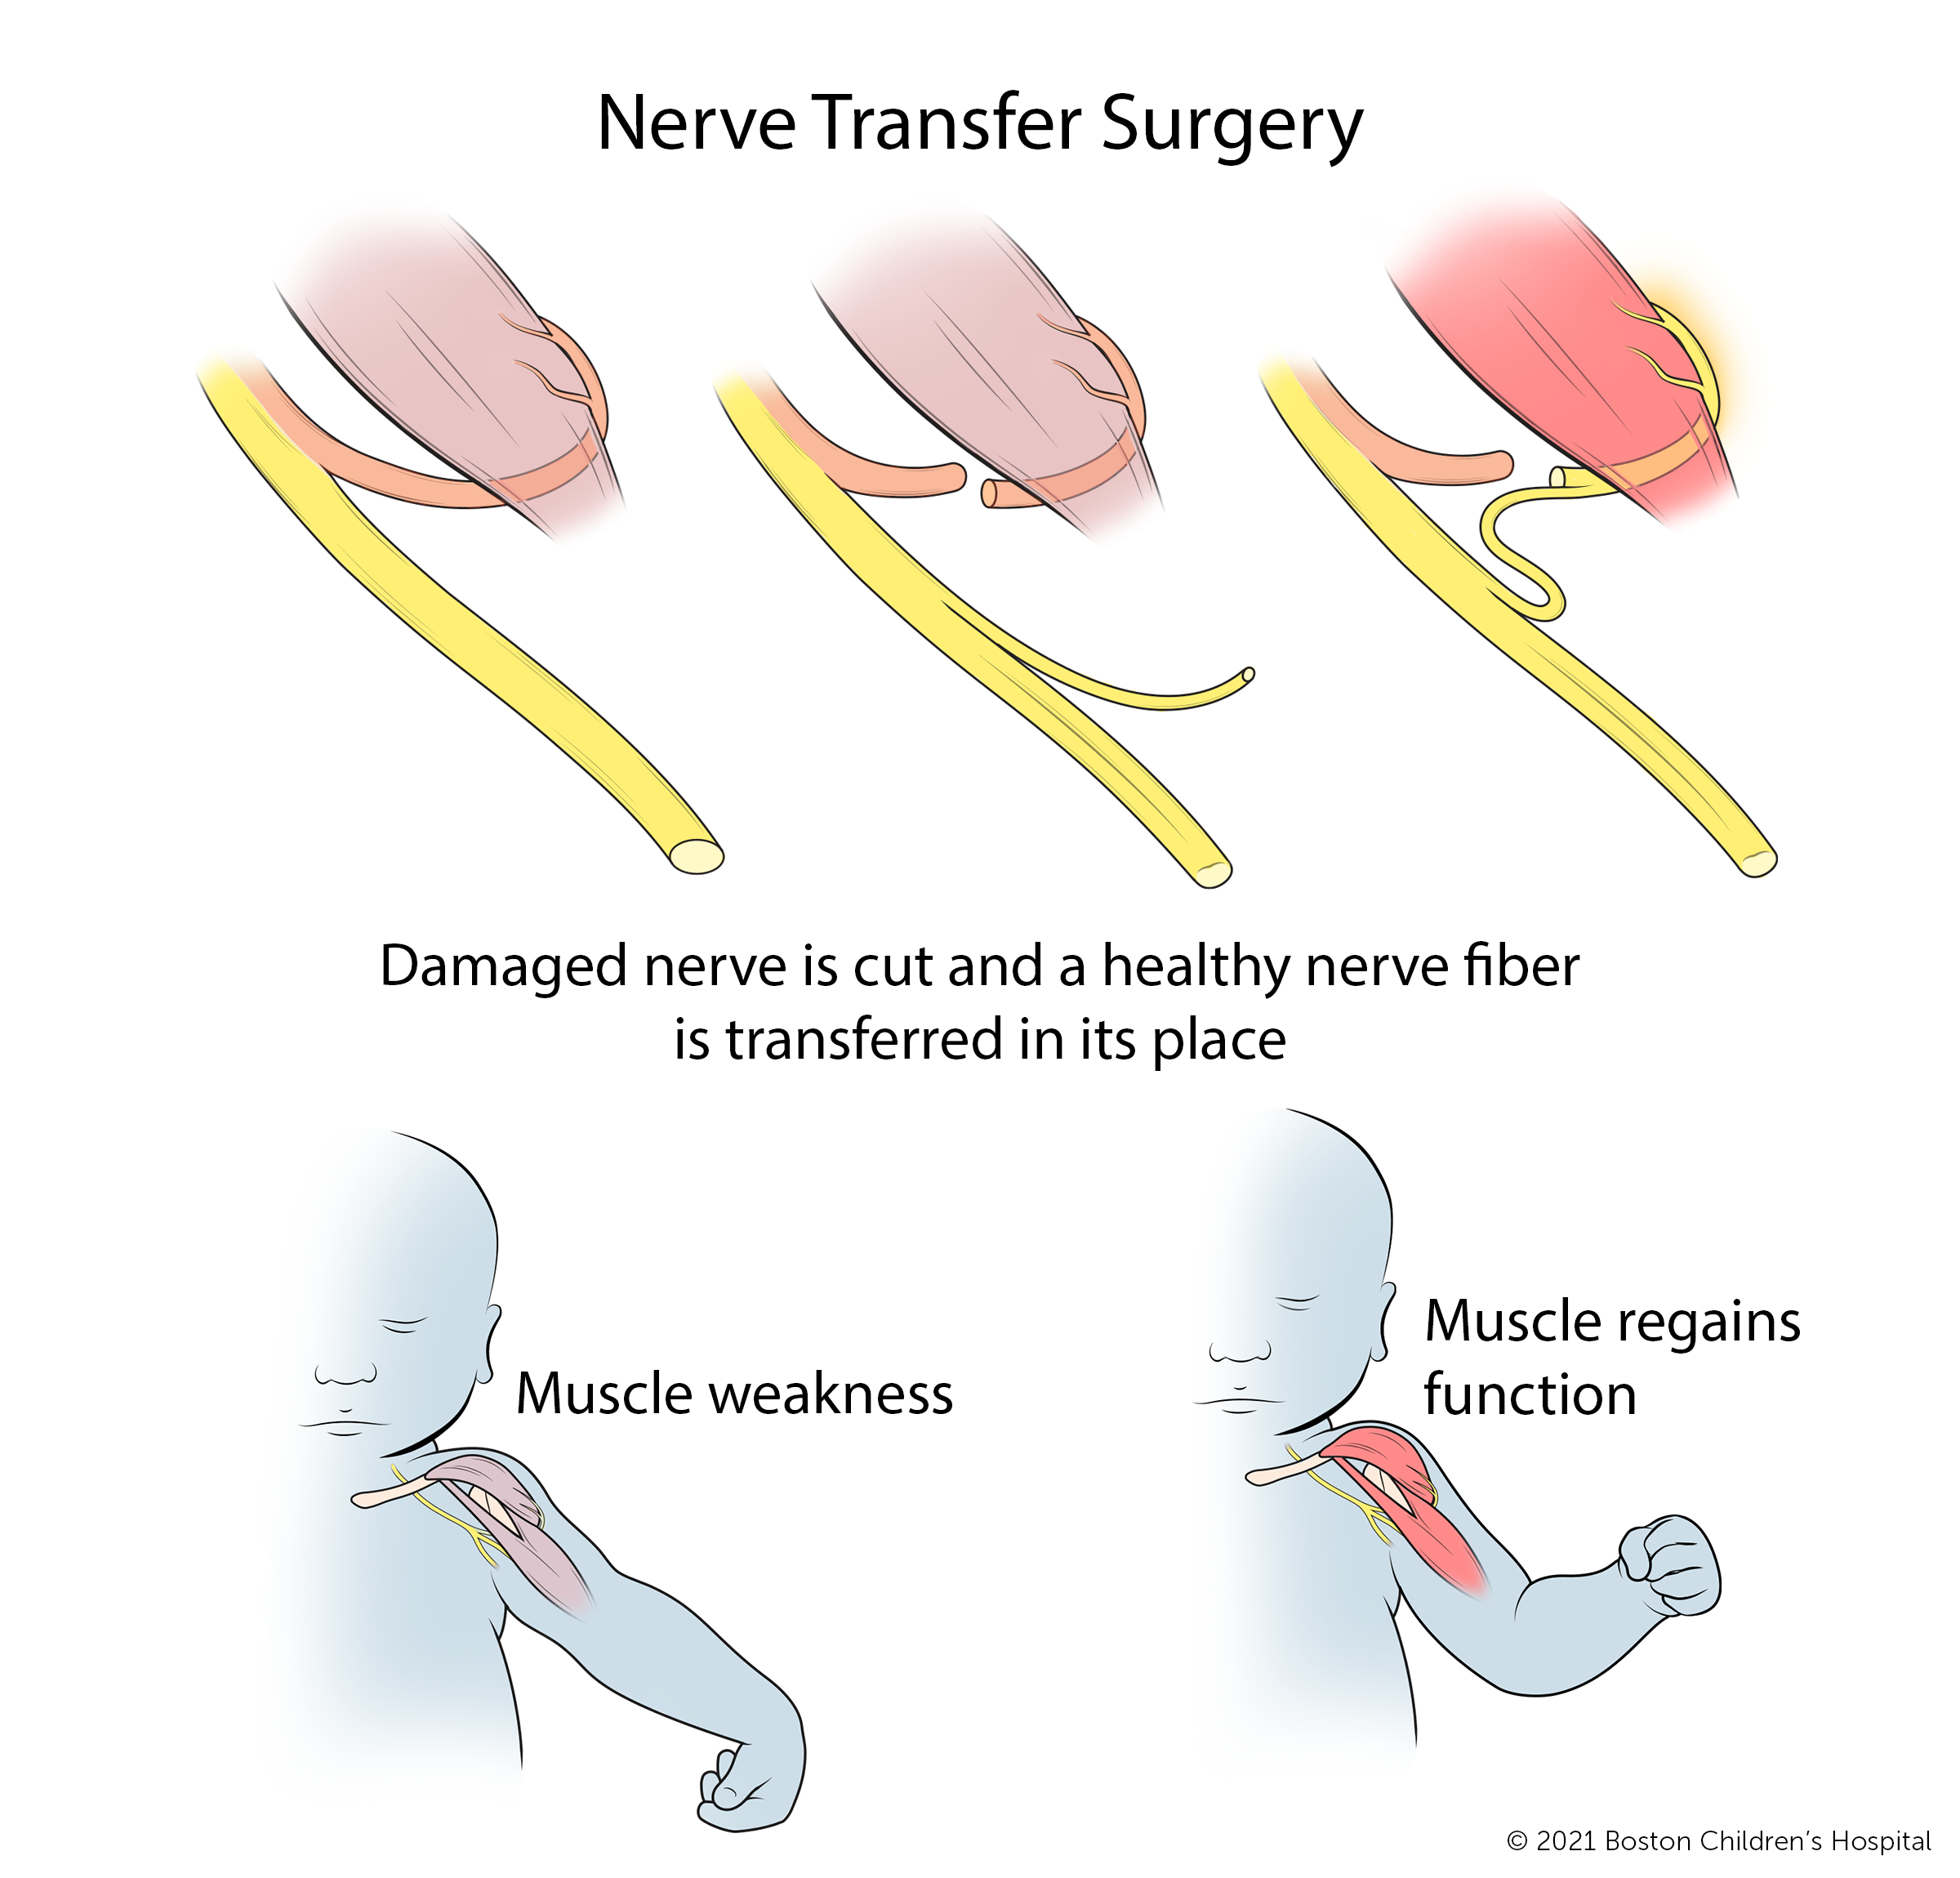 在神经移植手术中，受损的神经被切断，健康的神经纤维被移植到它的位置。随着时间的推移，肌肉无力的区域会恢复功能。